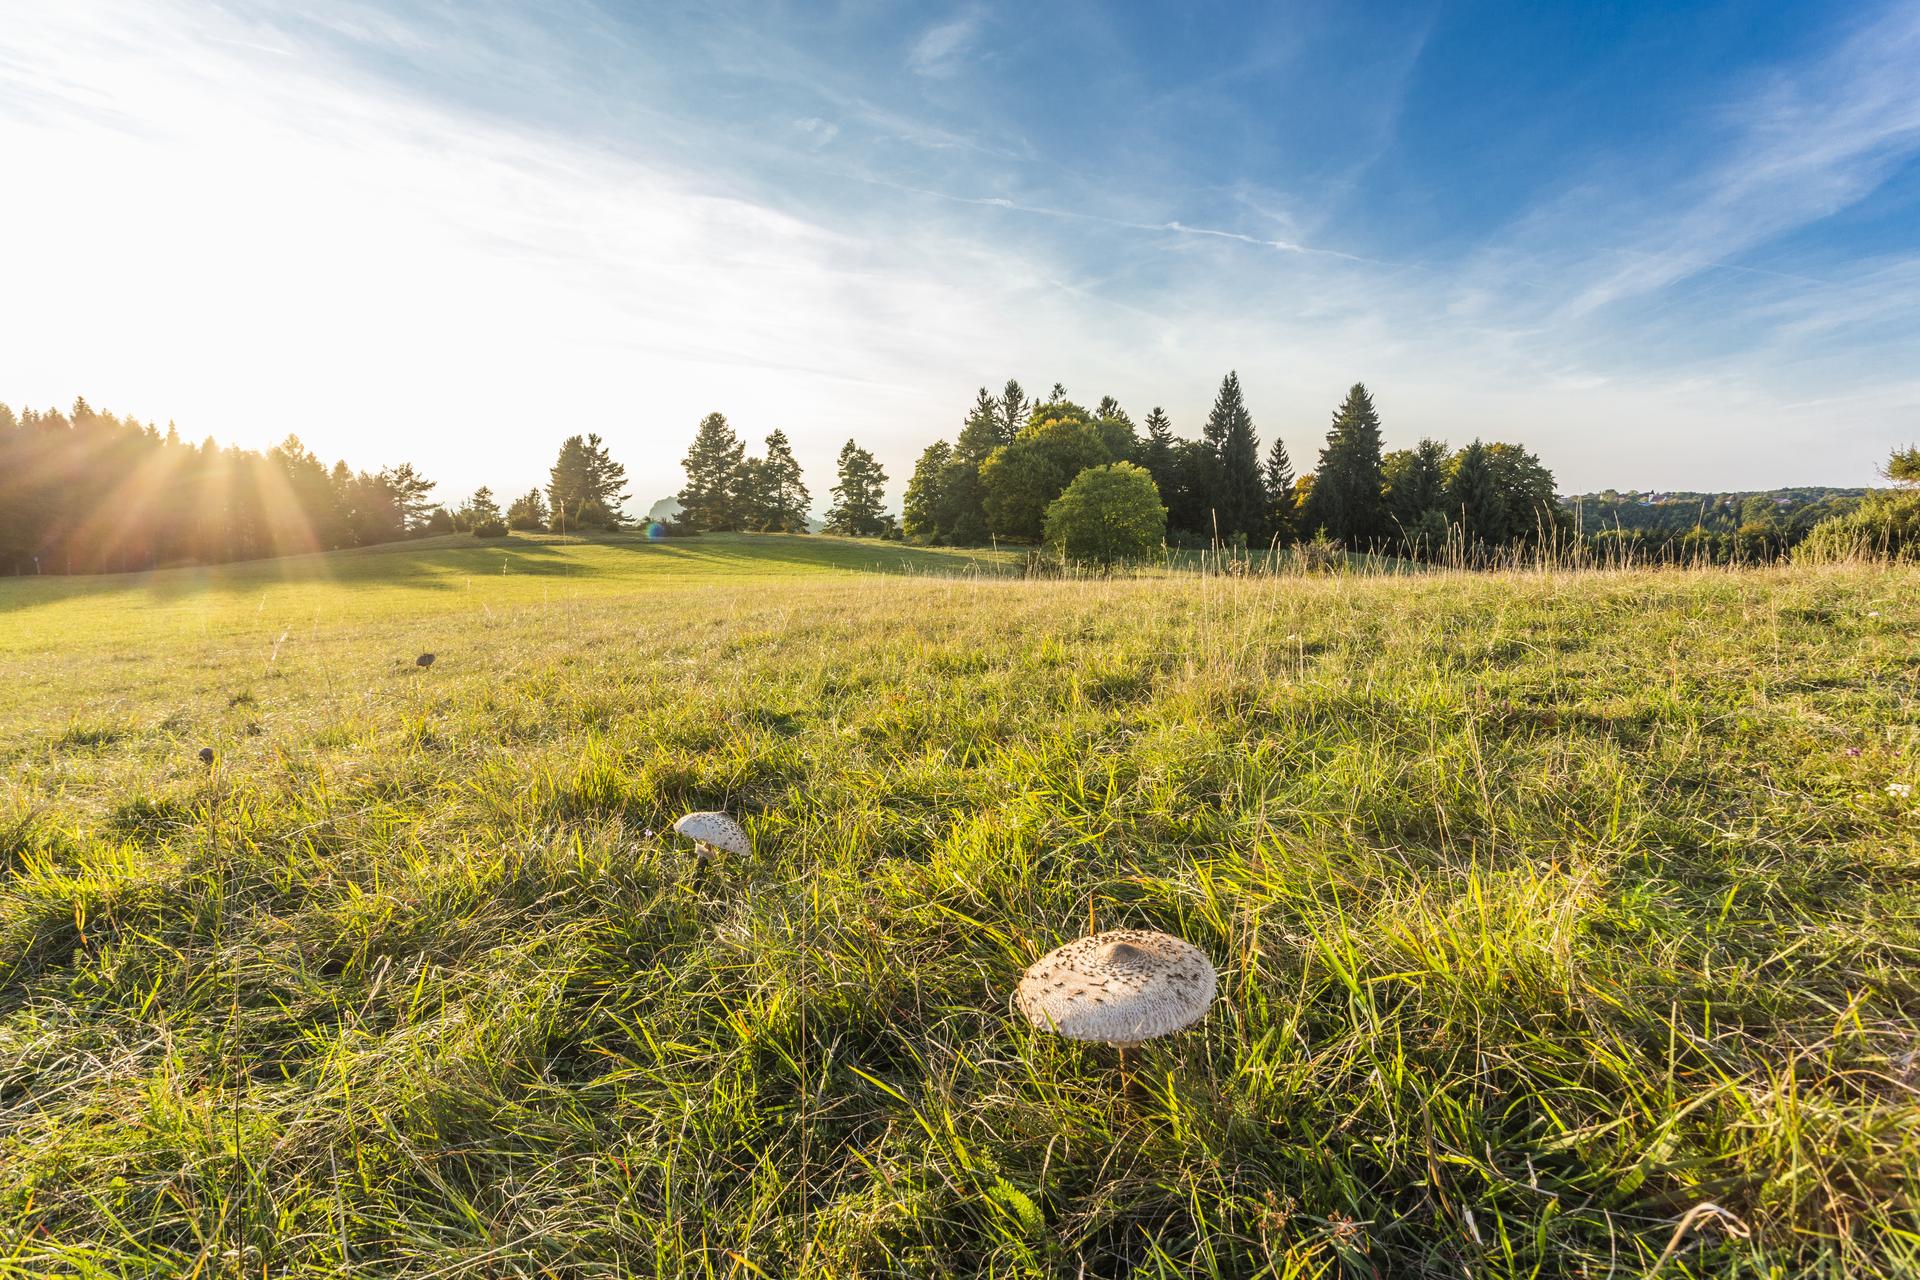 Pilze auf einer Wiese in Münsingen im Biosphärengebiet Schwäbische Alb. Auf einer Wiese stehen zwei große weiße Pilze. Im Hintergrund ist eine weite Fläche und dann Wald. Die Sonne taucht die Landschaft in ein stimmungsvolles Licht.